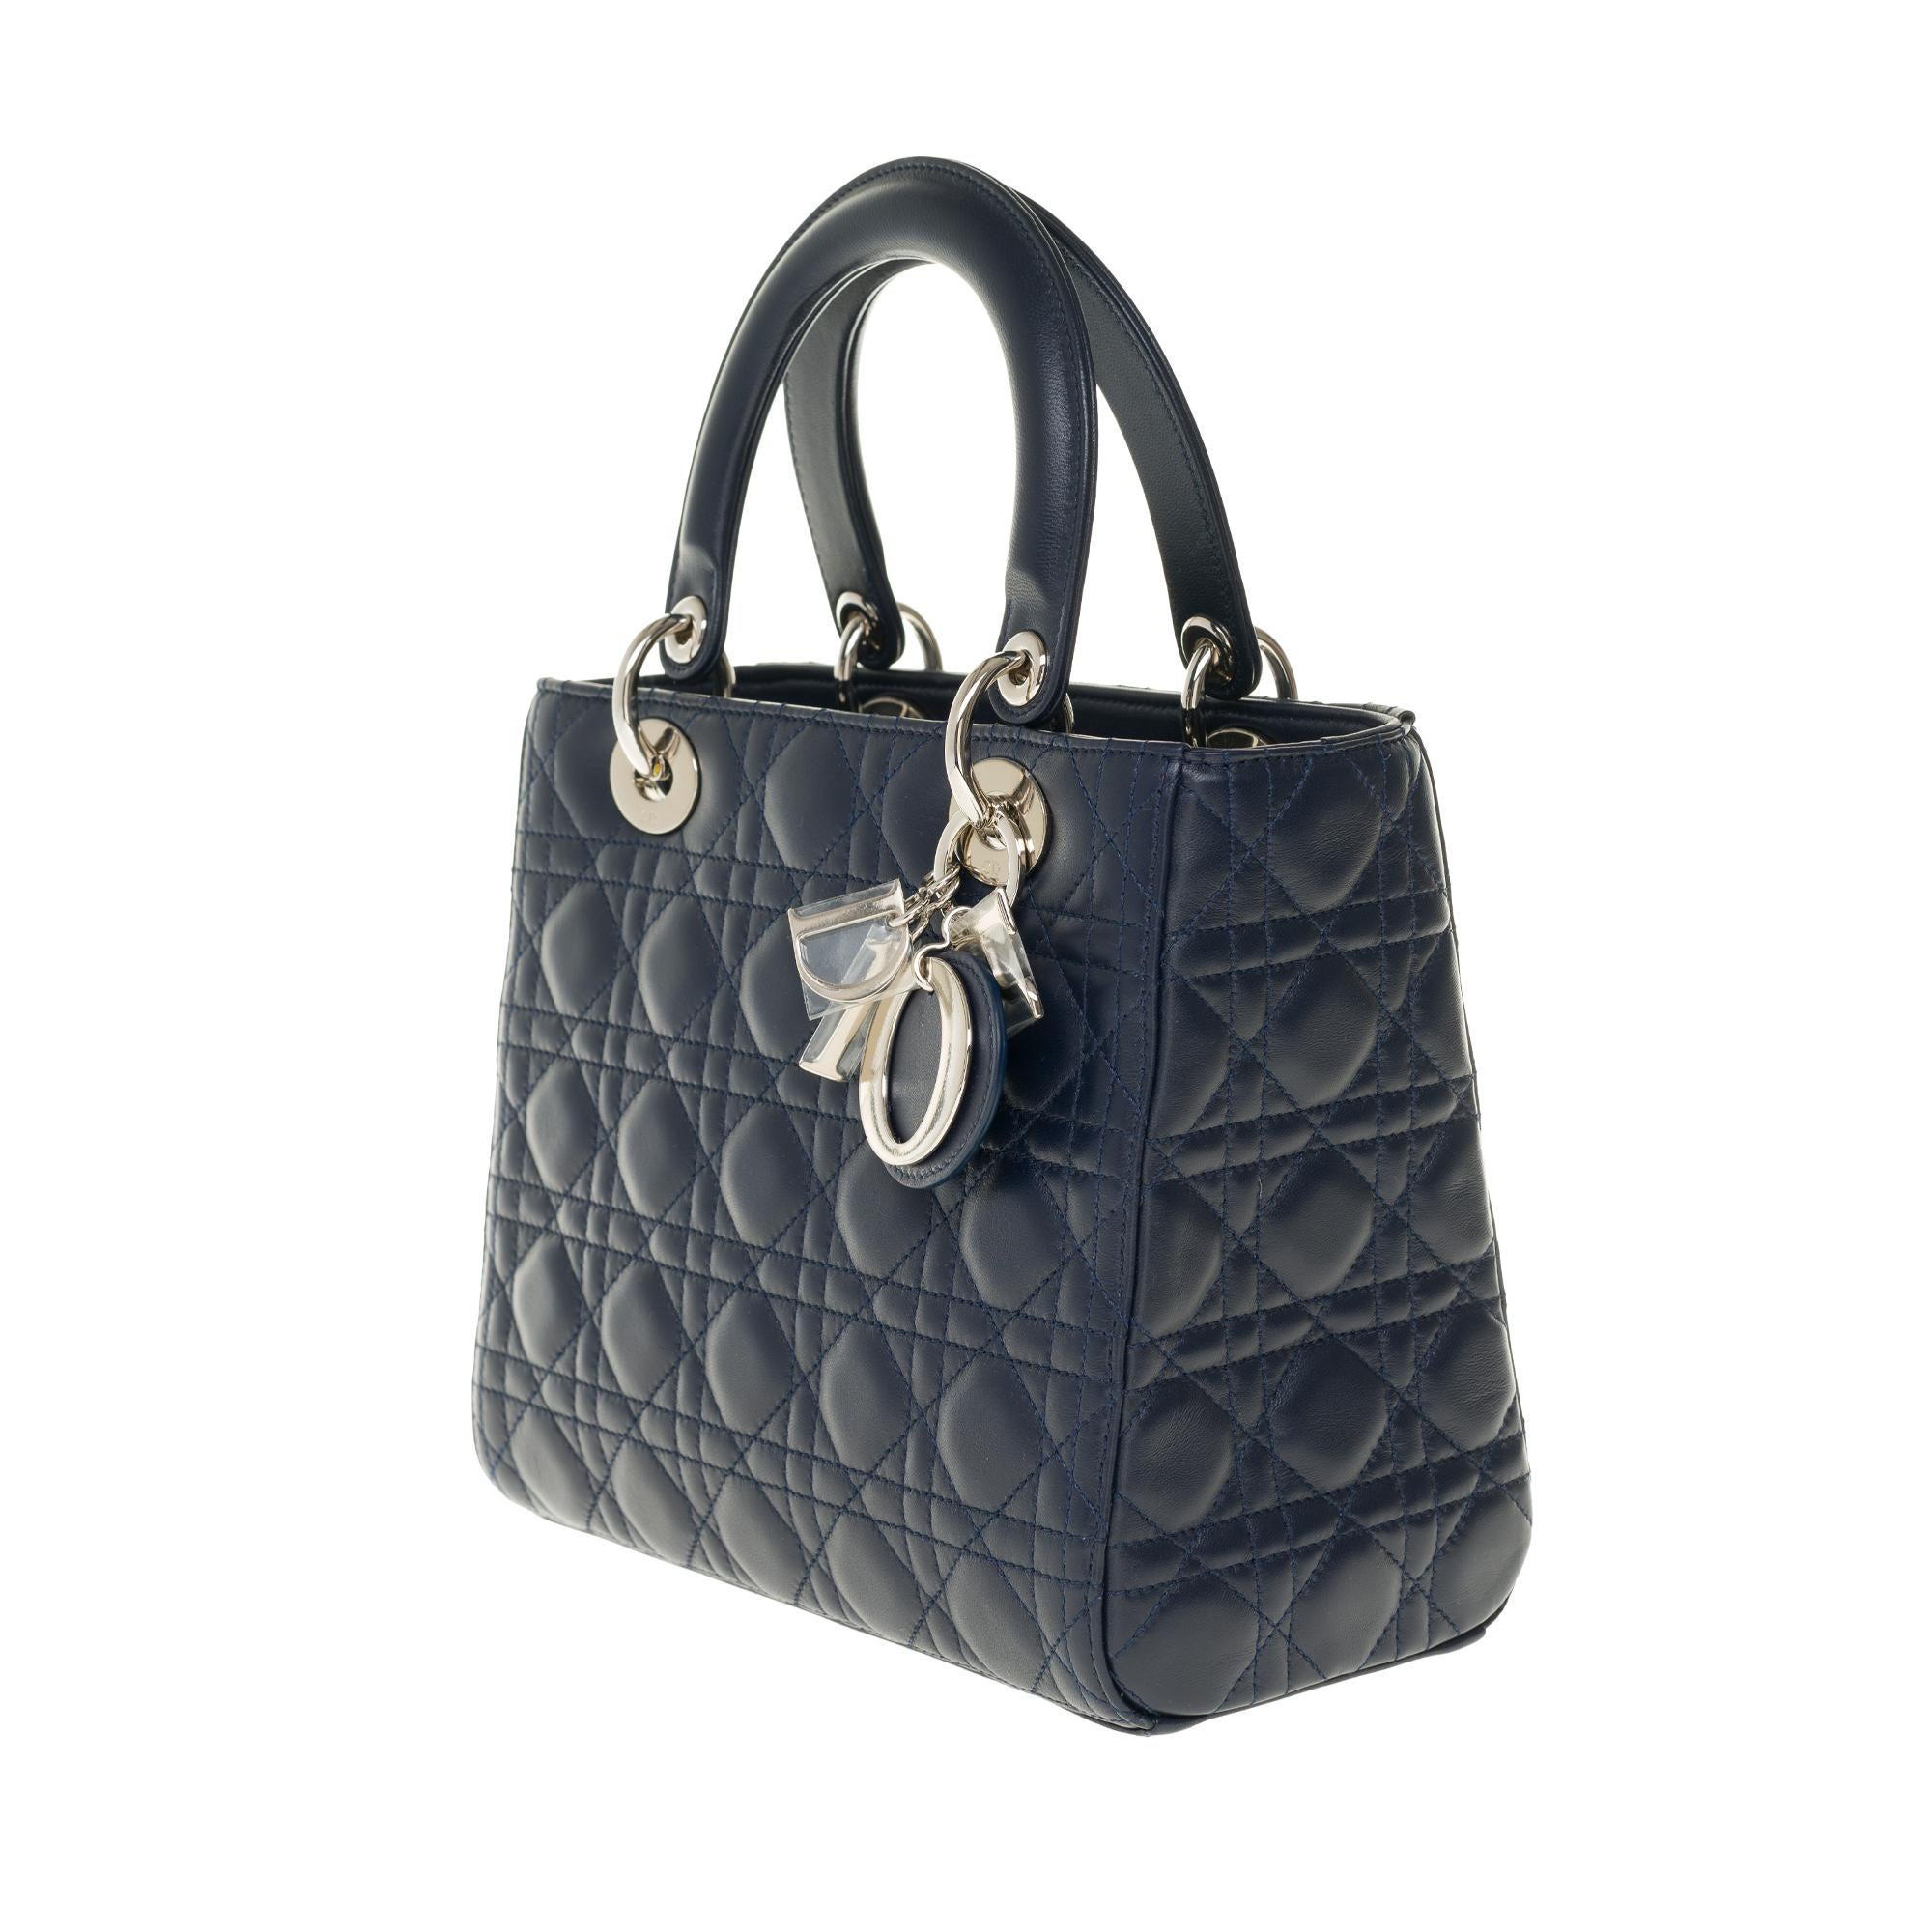 Black  Christian Dior Lady Dior MM (Medium size) handbag in black cannage leather, SHW